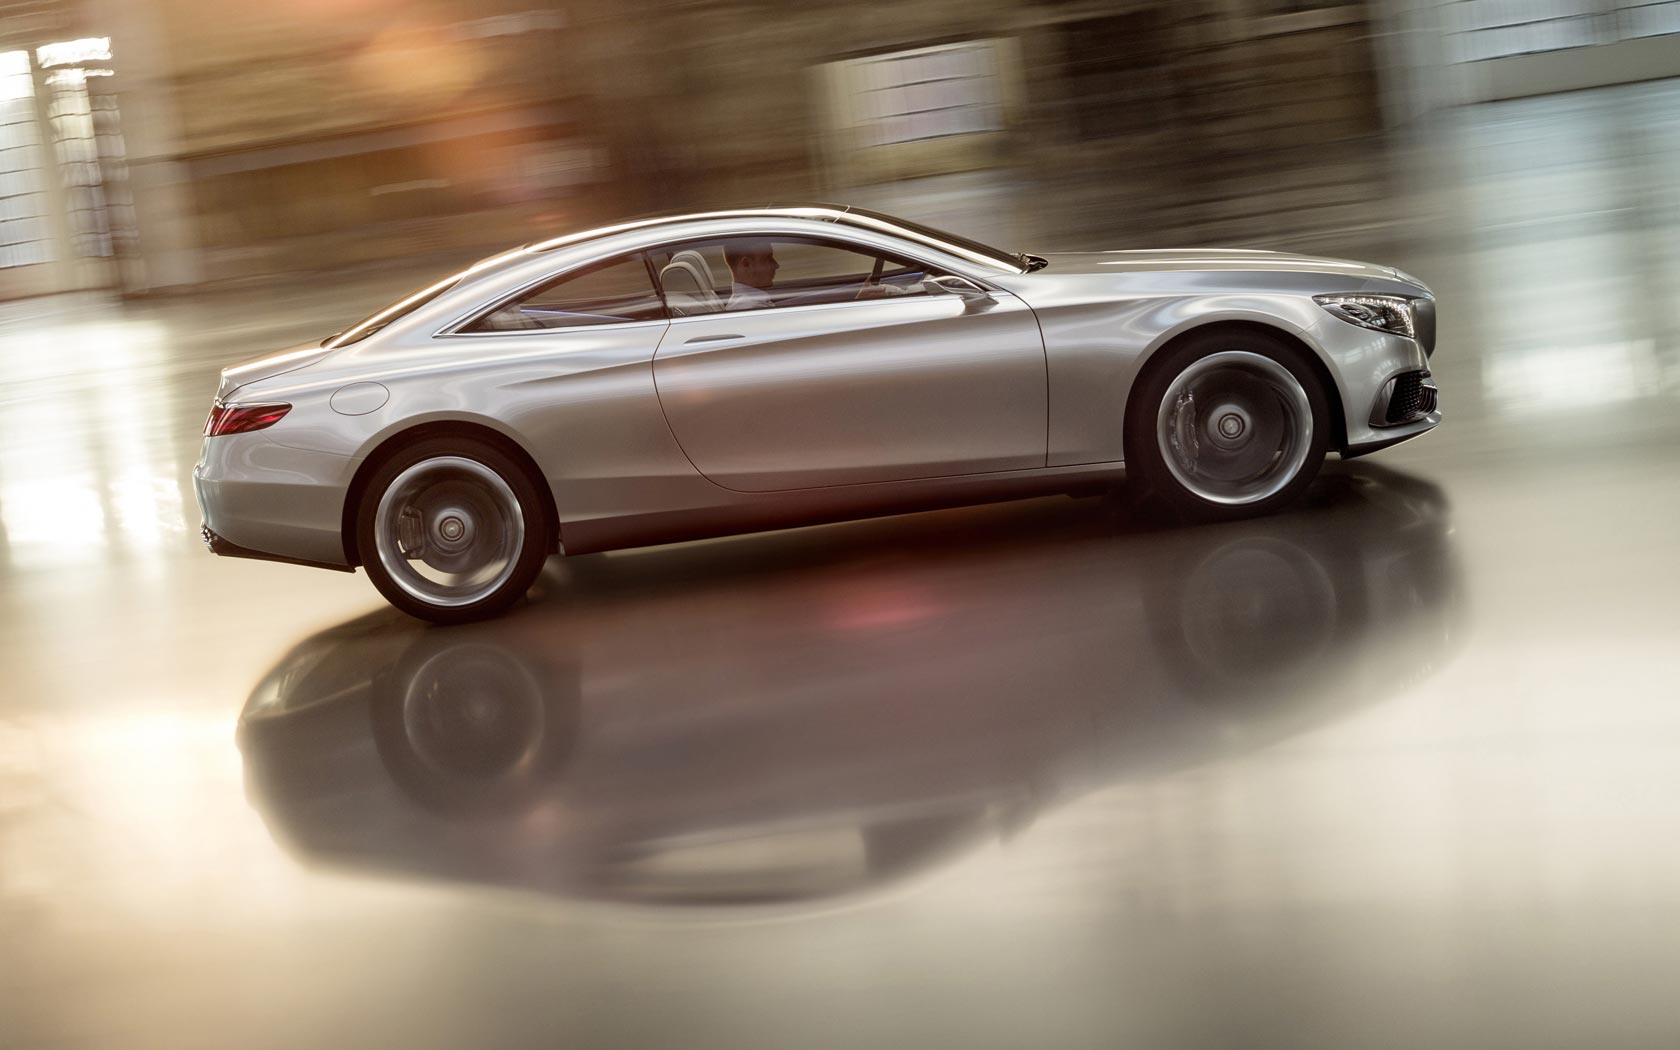  Mercedes S-Class Coupe Concept 